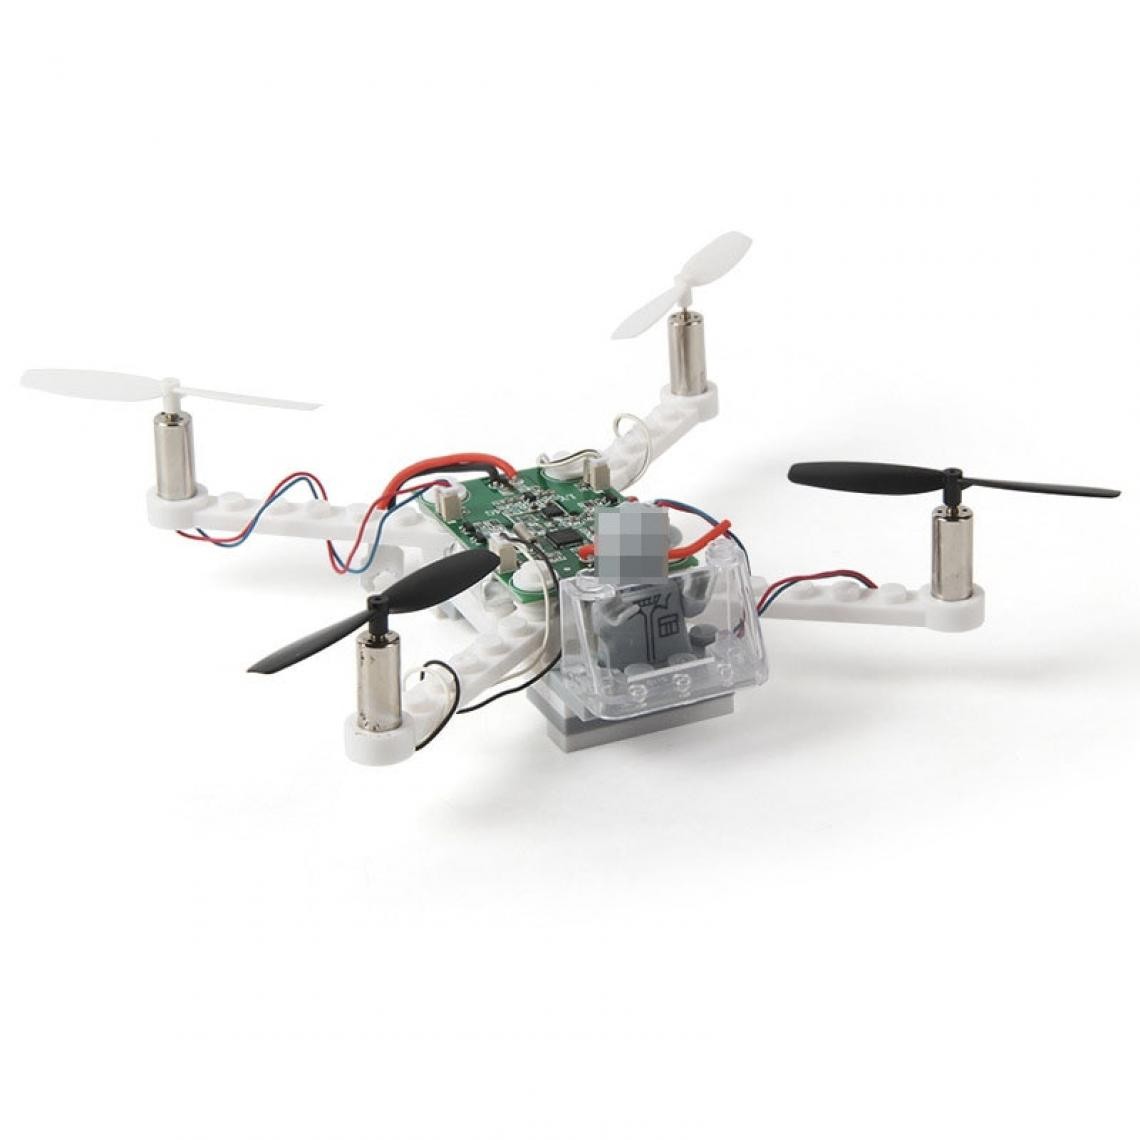 Universal - Hélicoptère RC Bricolage Blocs de construction Drone 2.4G 4CH Mini 3D Brick Quadcopter Assemblage Jouet éducatif | Hélicoptère RC(blanche) - Drone